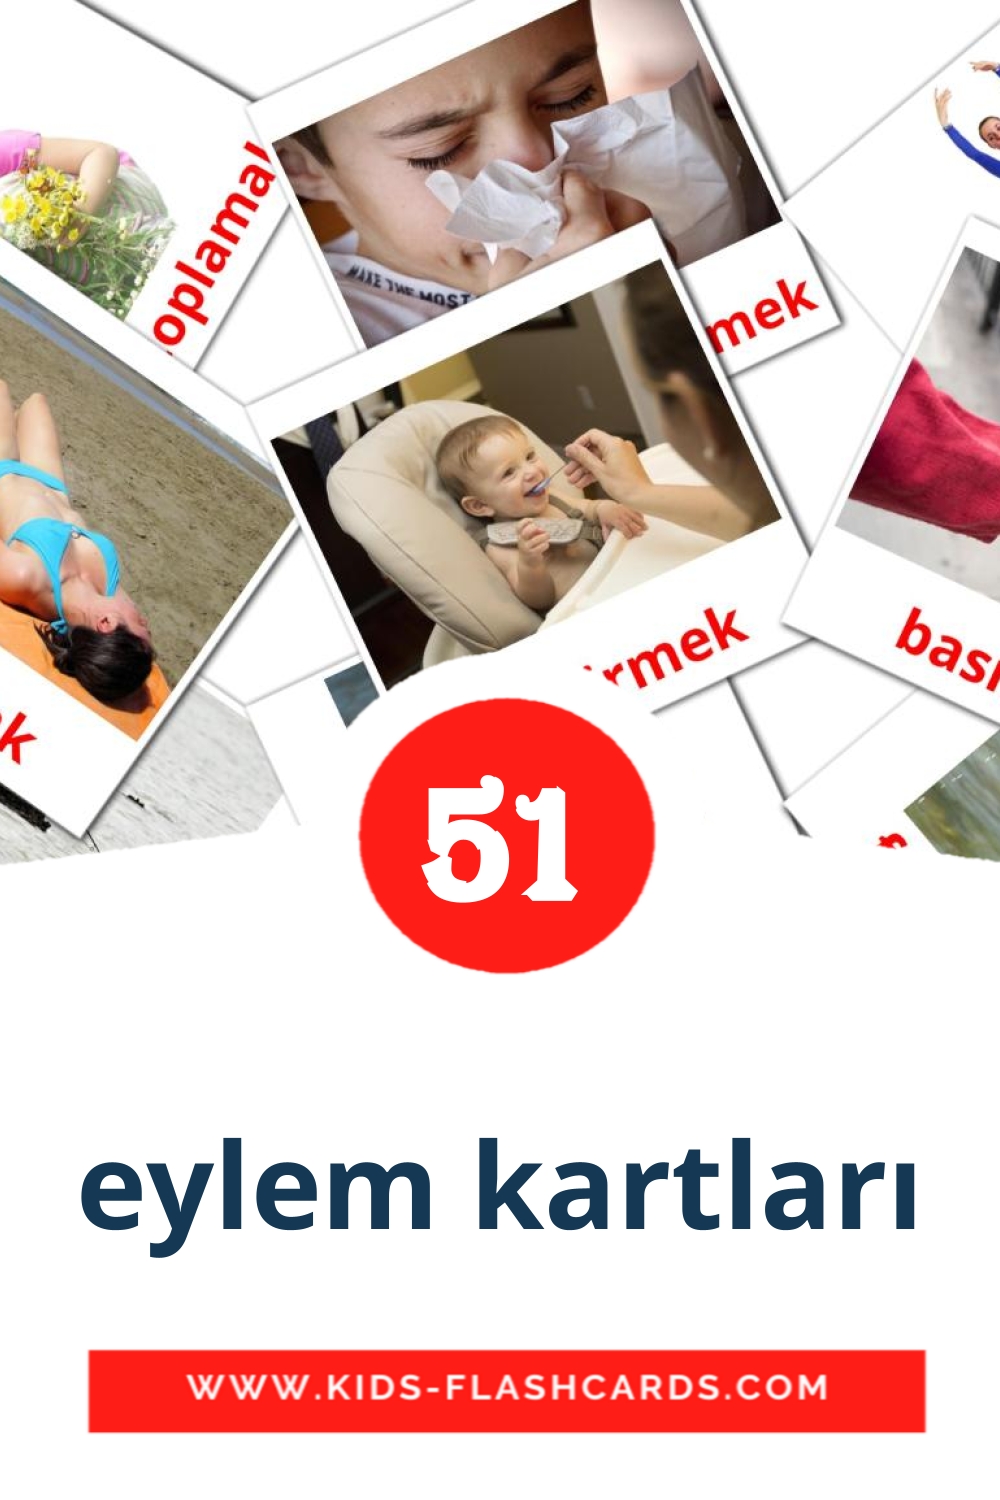 eylem kartları на турецком для Детского Сада (54 карточки)